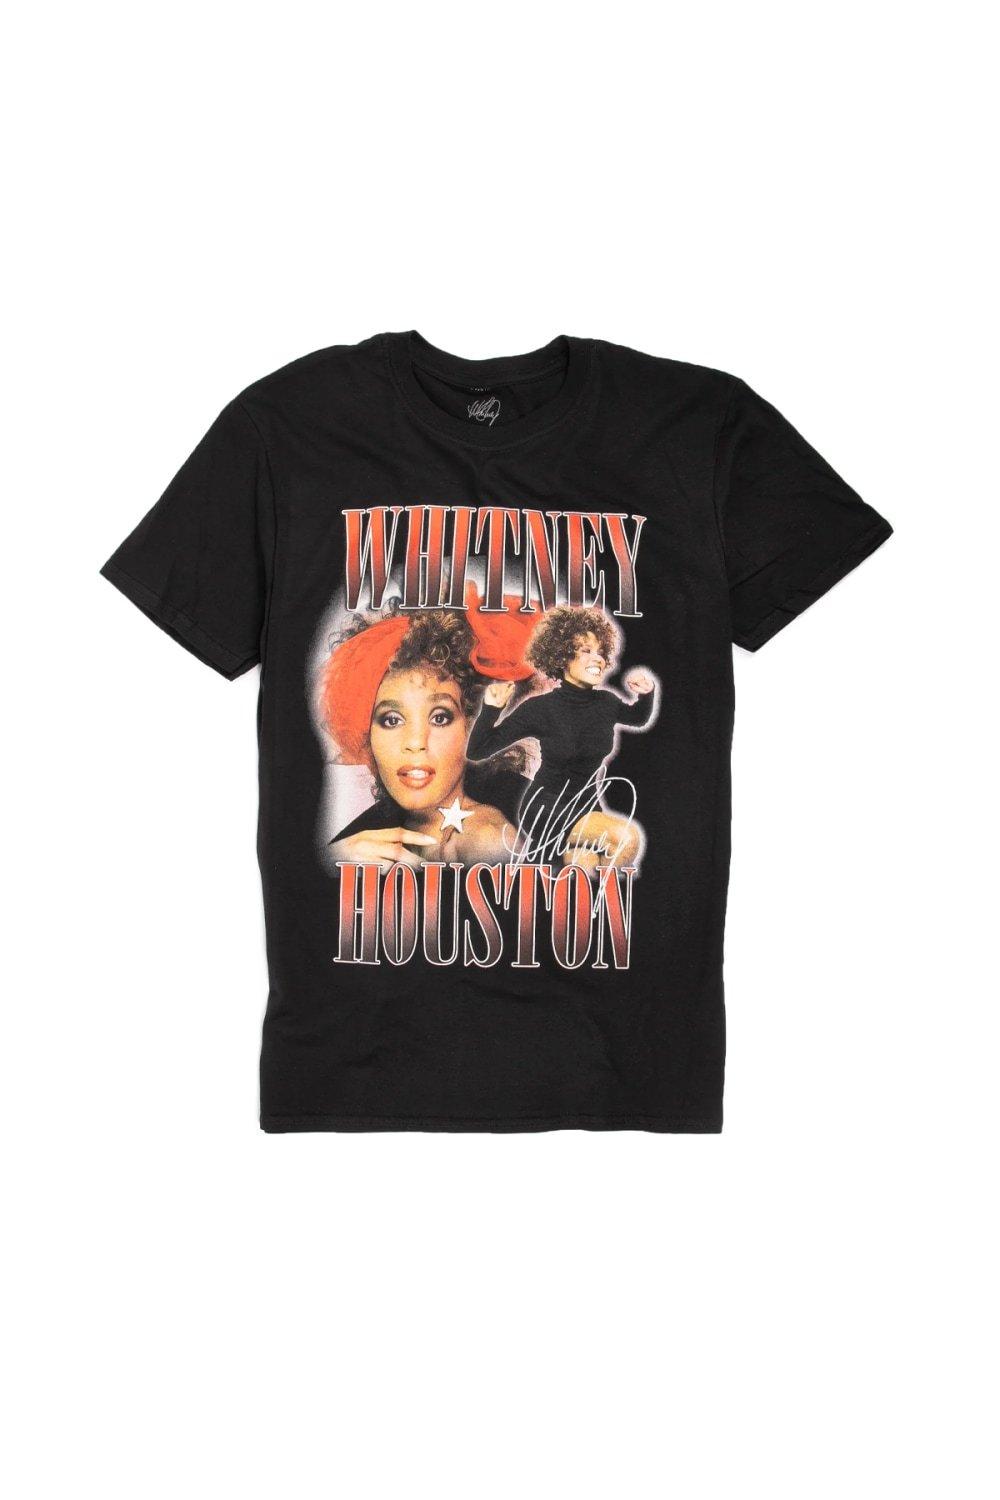 Хлопковая футболка в стиле 90-х годов Whitney Houston, черный 90x150 см trws флаг полиэстер печатная фотография для декора